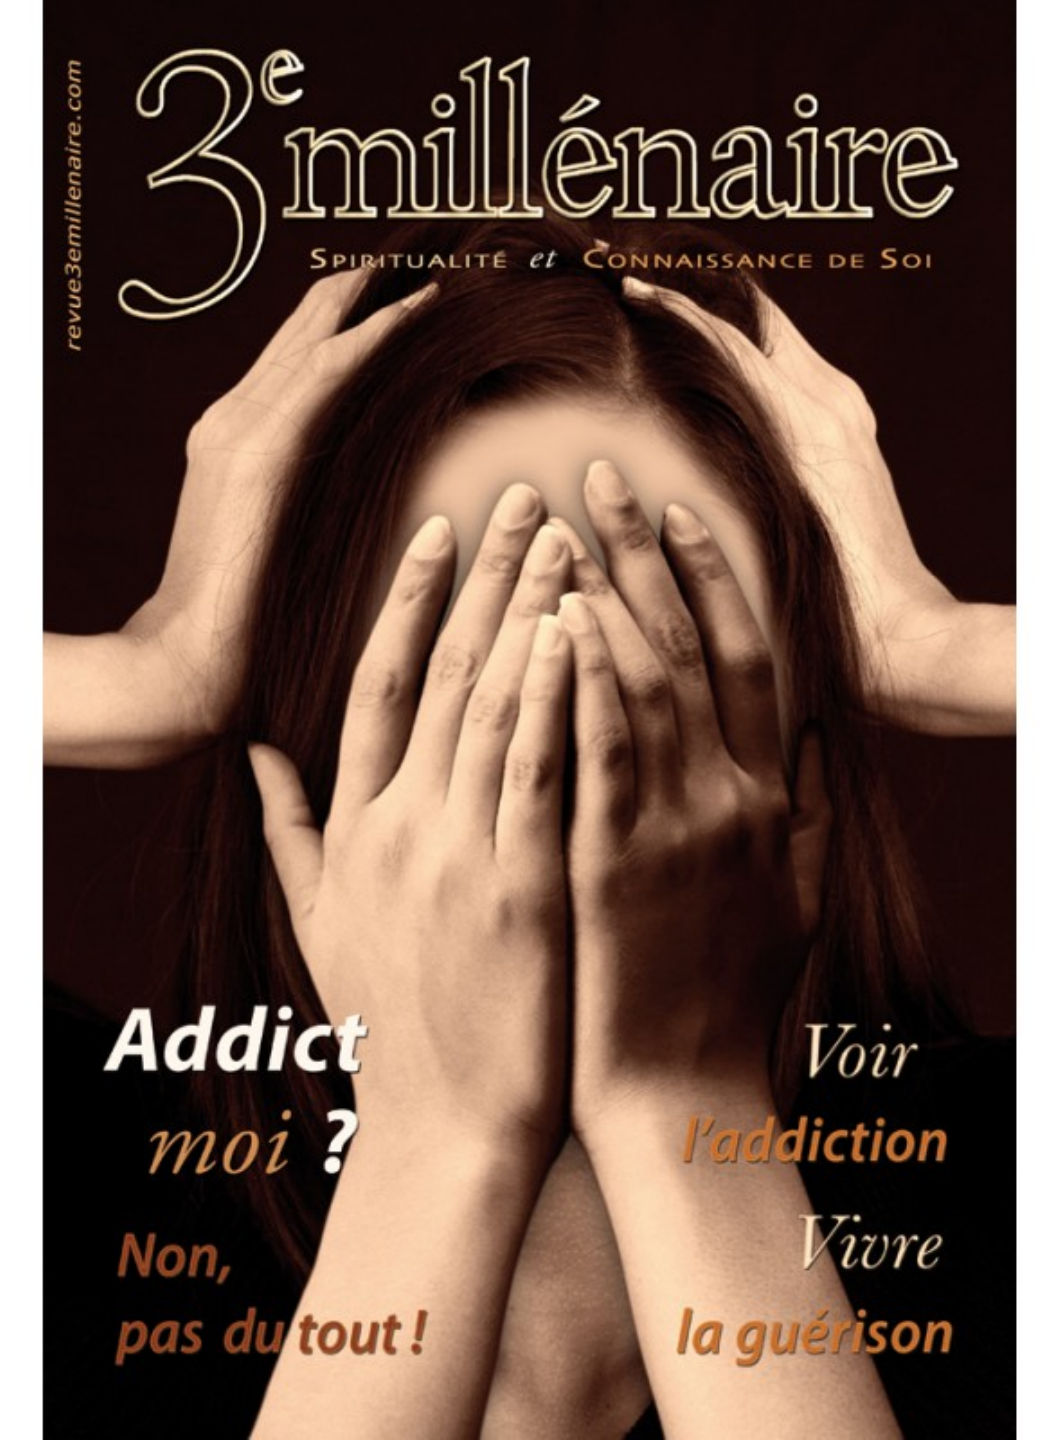 Collectif Revue 3eme Millénaire n°145 (septembre 2022) : Addict, moi ? Librairie Eklectic